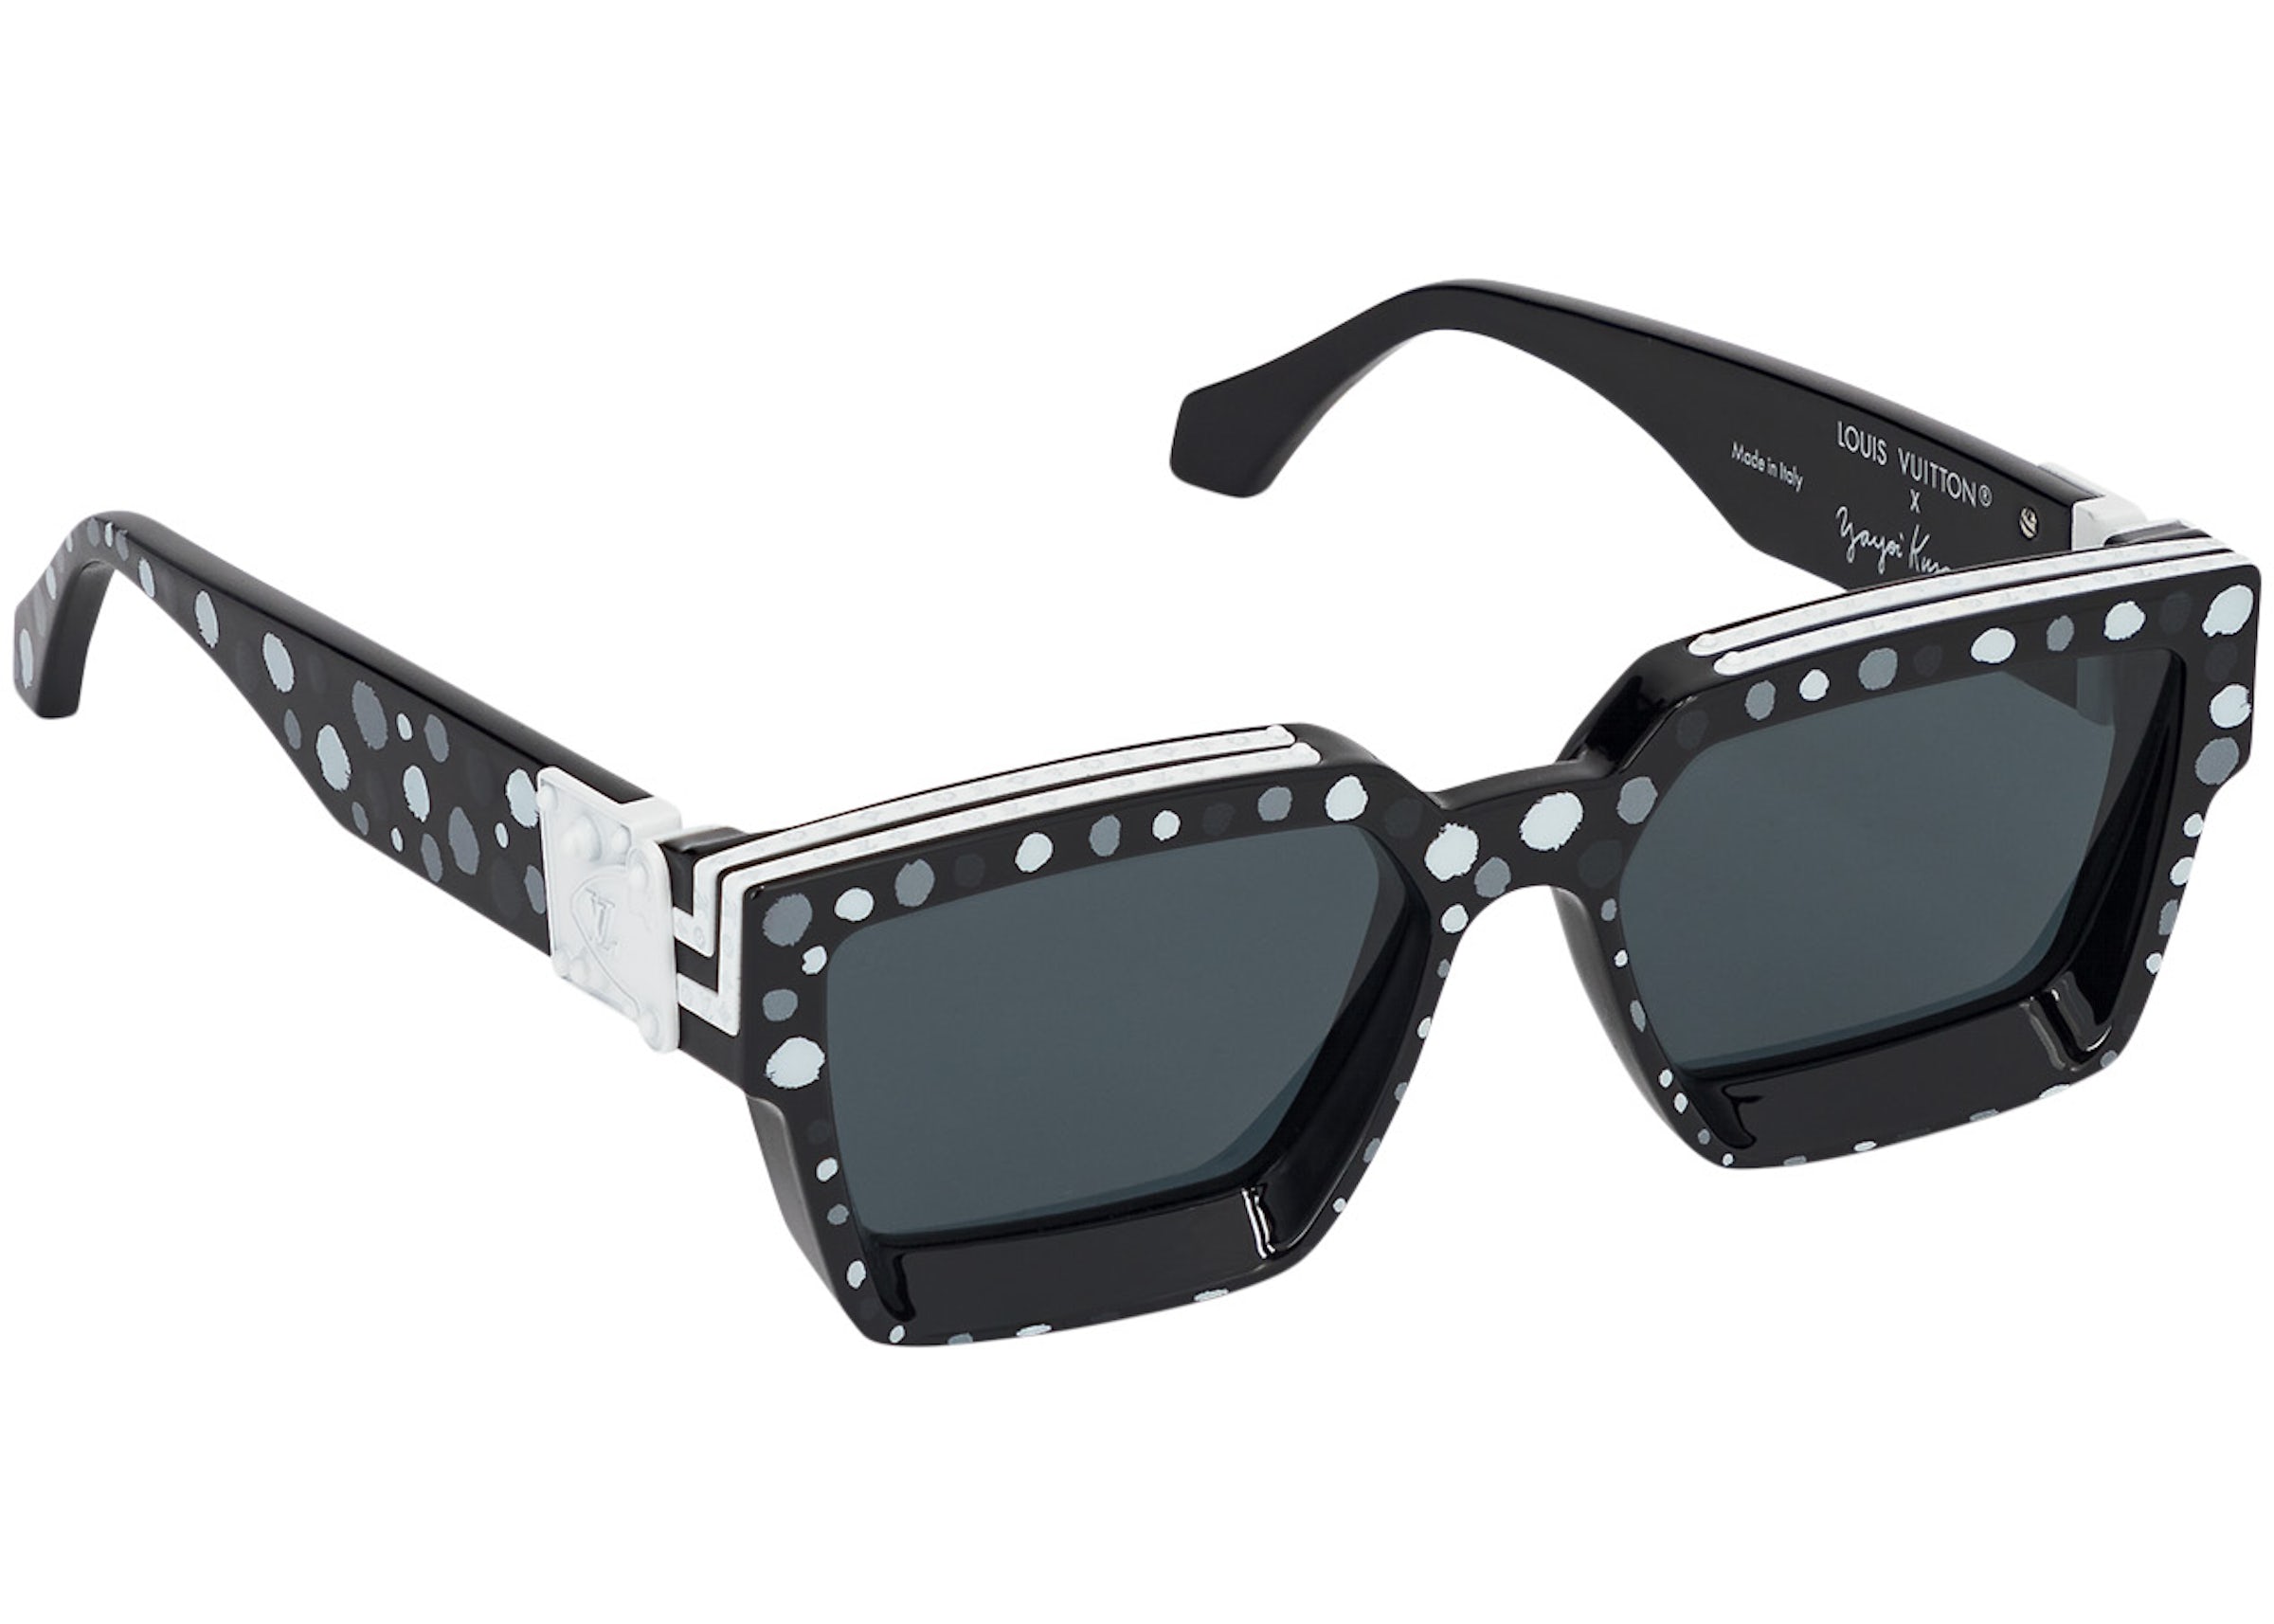 Louis Vuitton Ash Sunglasses & 1.1 Millionaires Sunglasses 